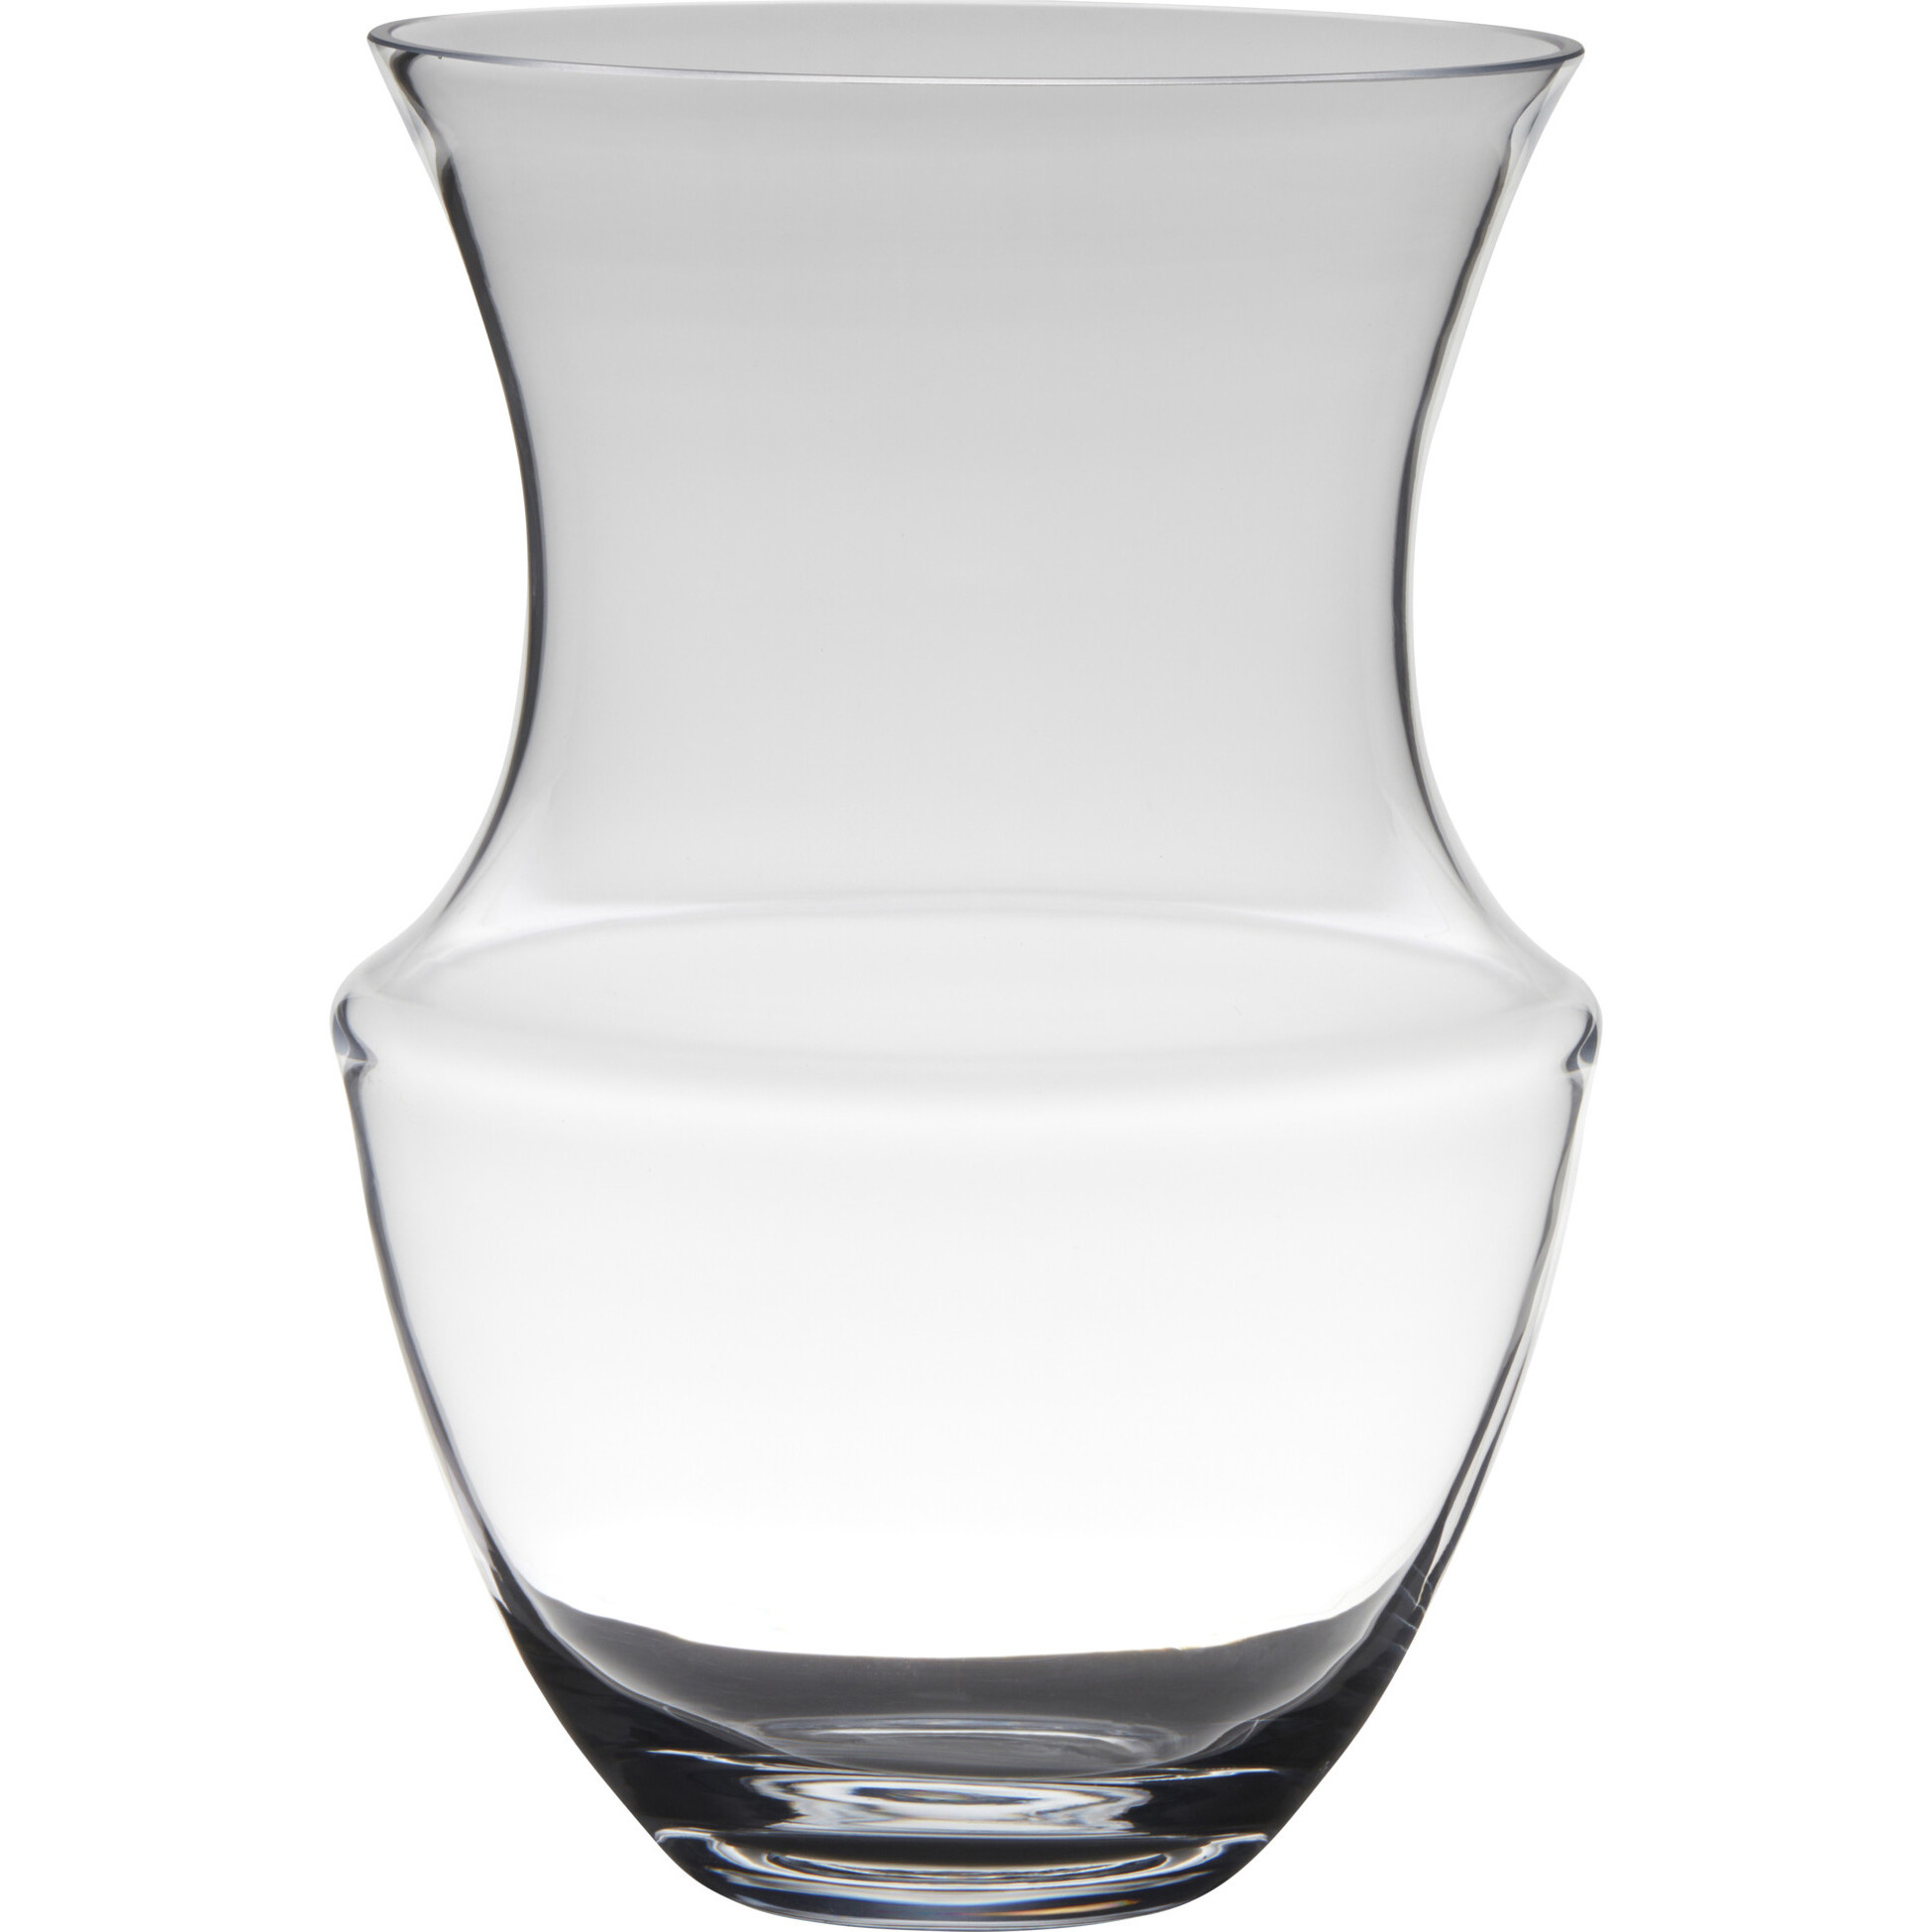 Transparante luxe vaas/vazen van glas 32 x 21 cm